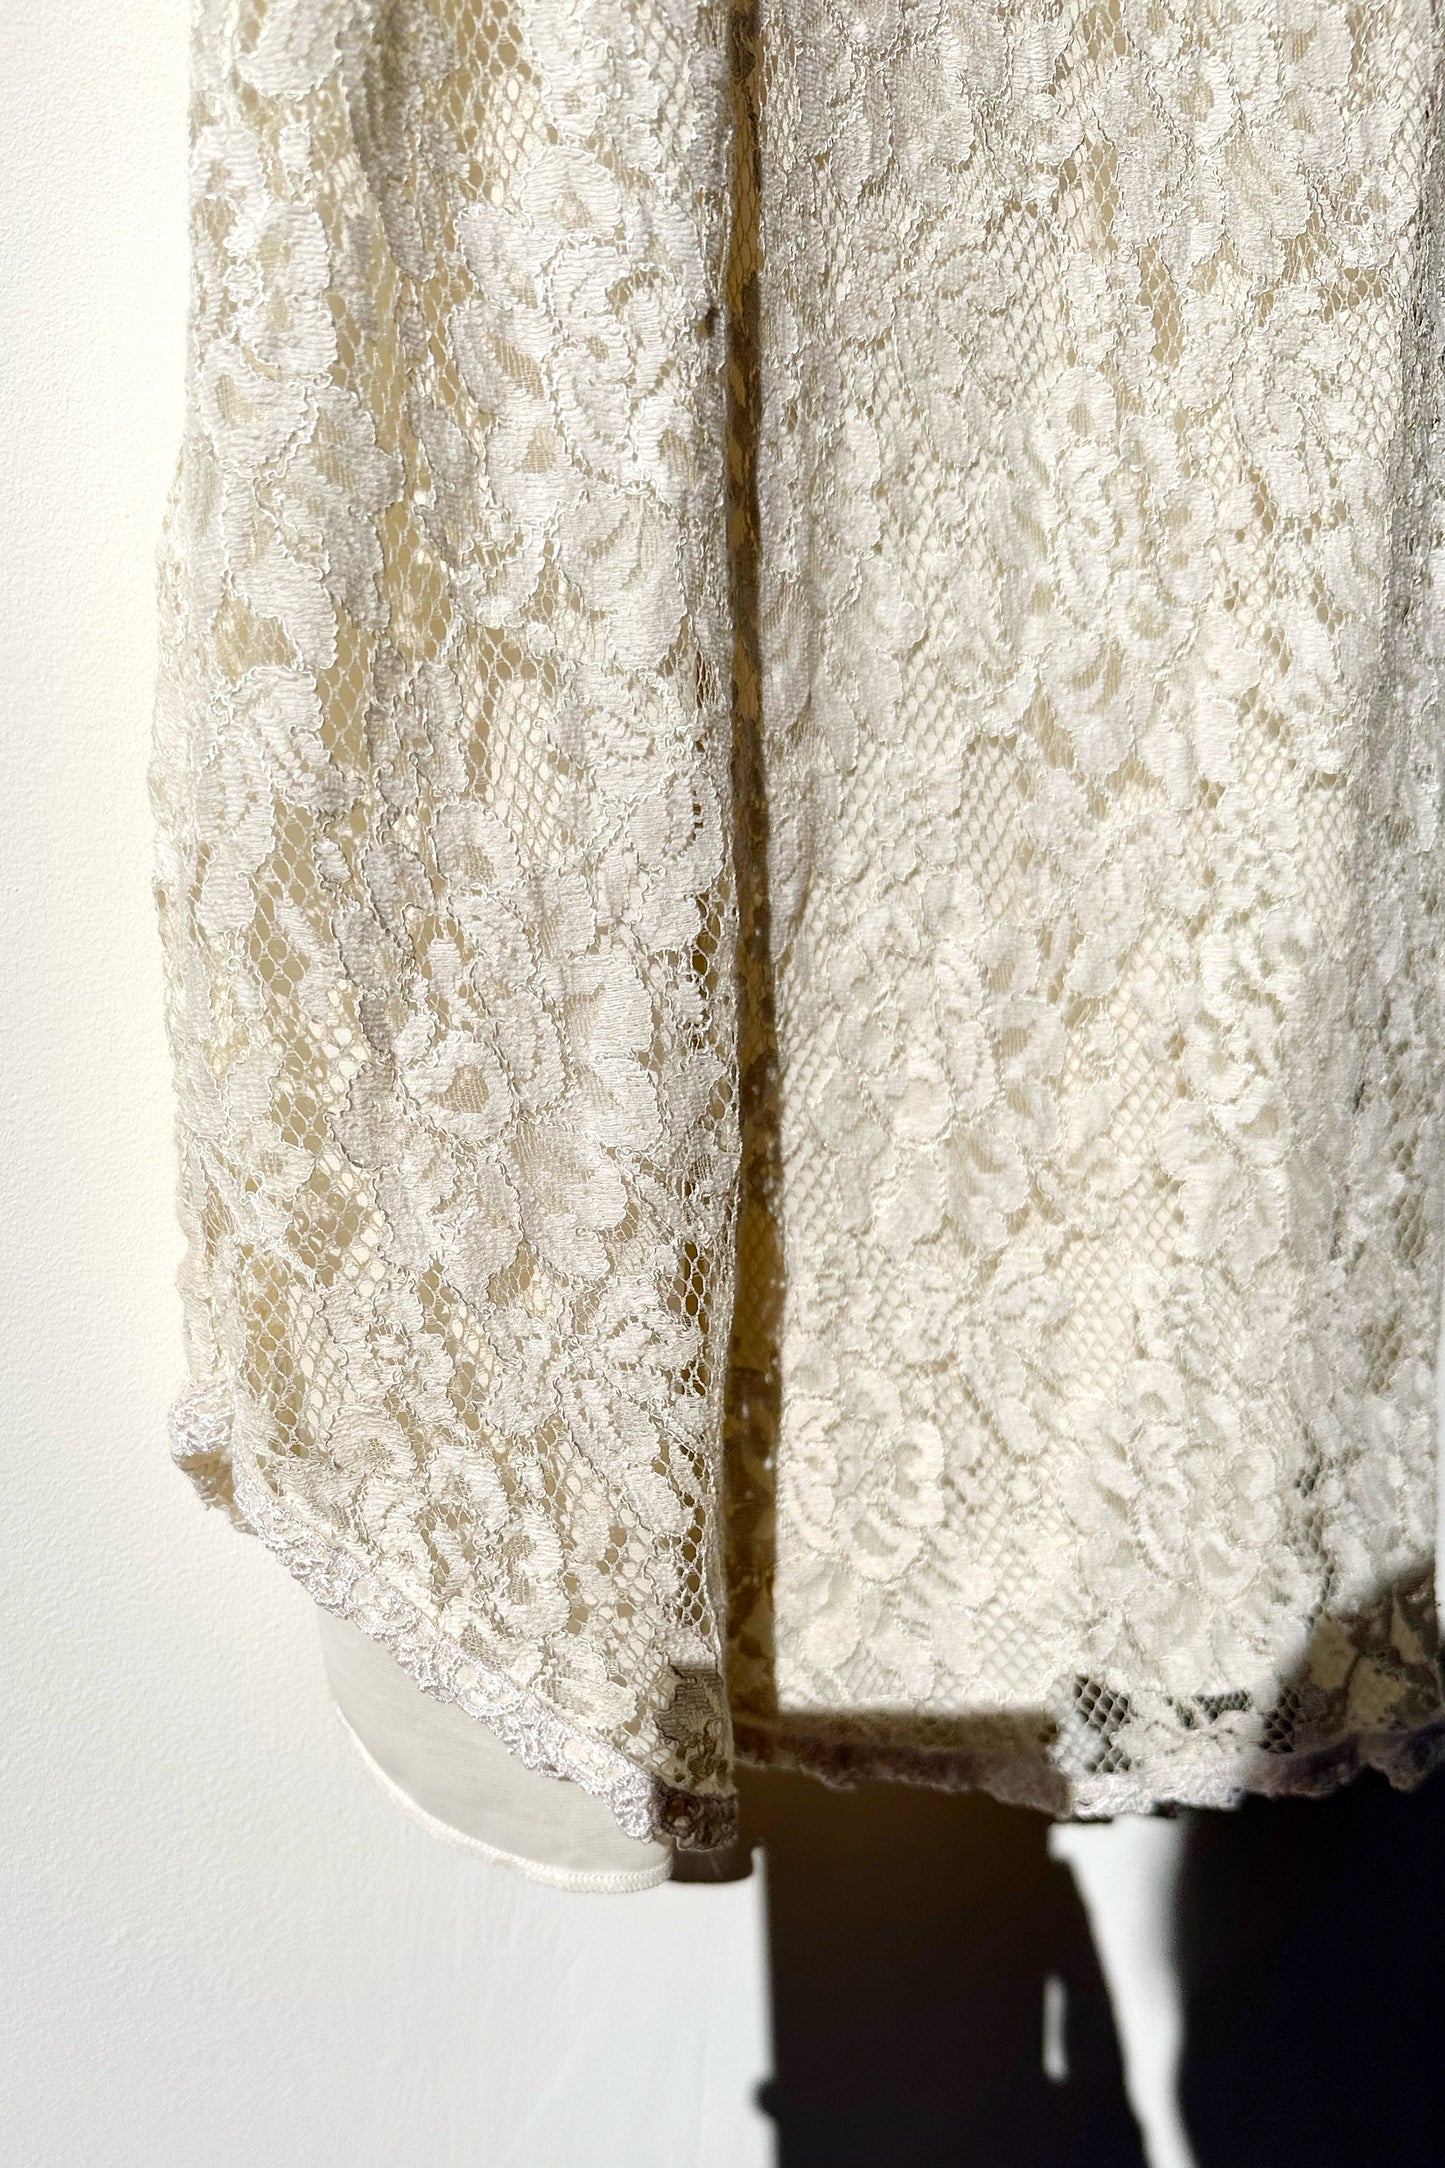 White Lace Slip Dress 90's Flower Detail US 8